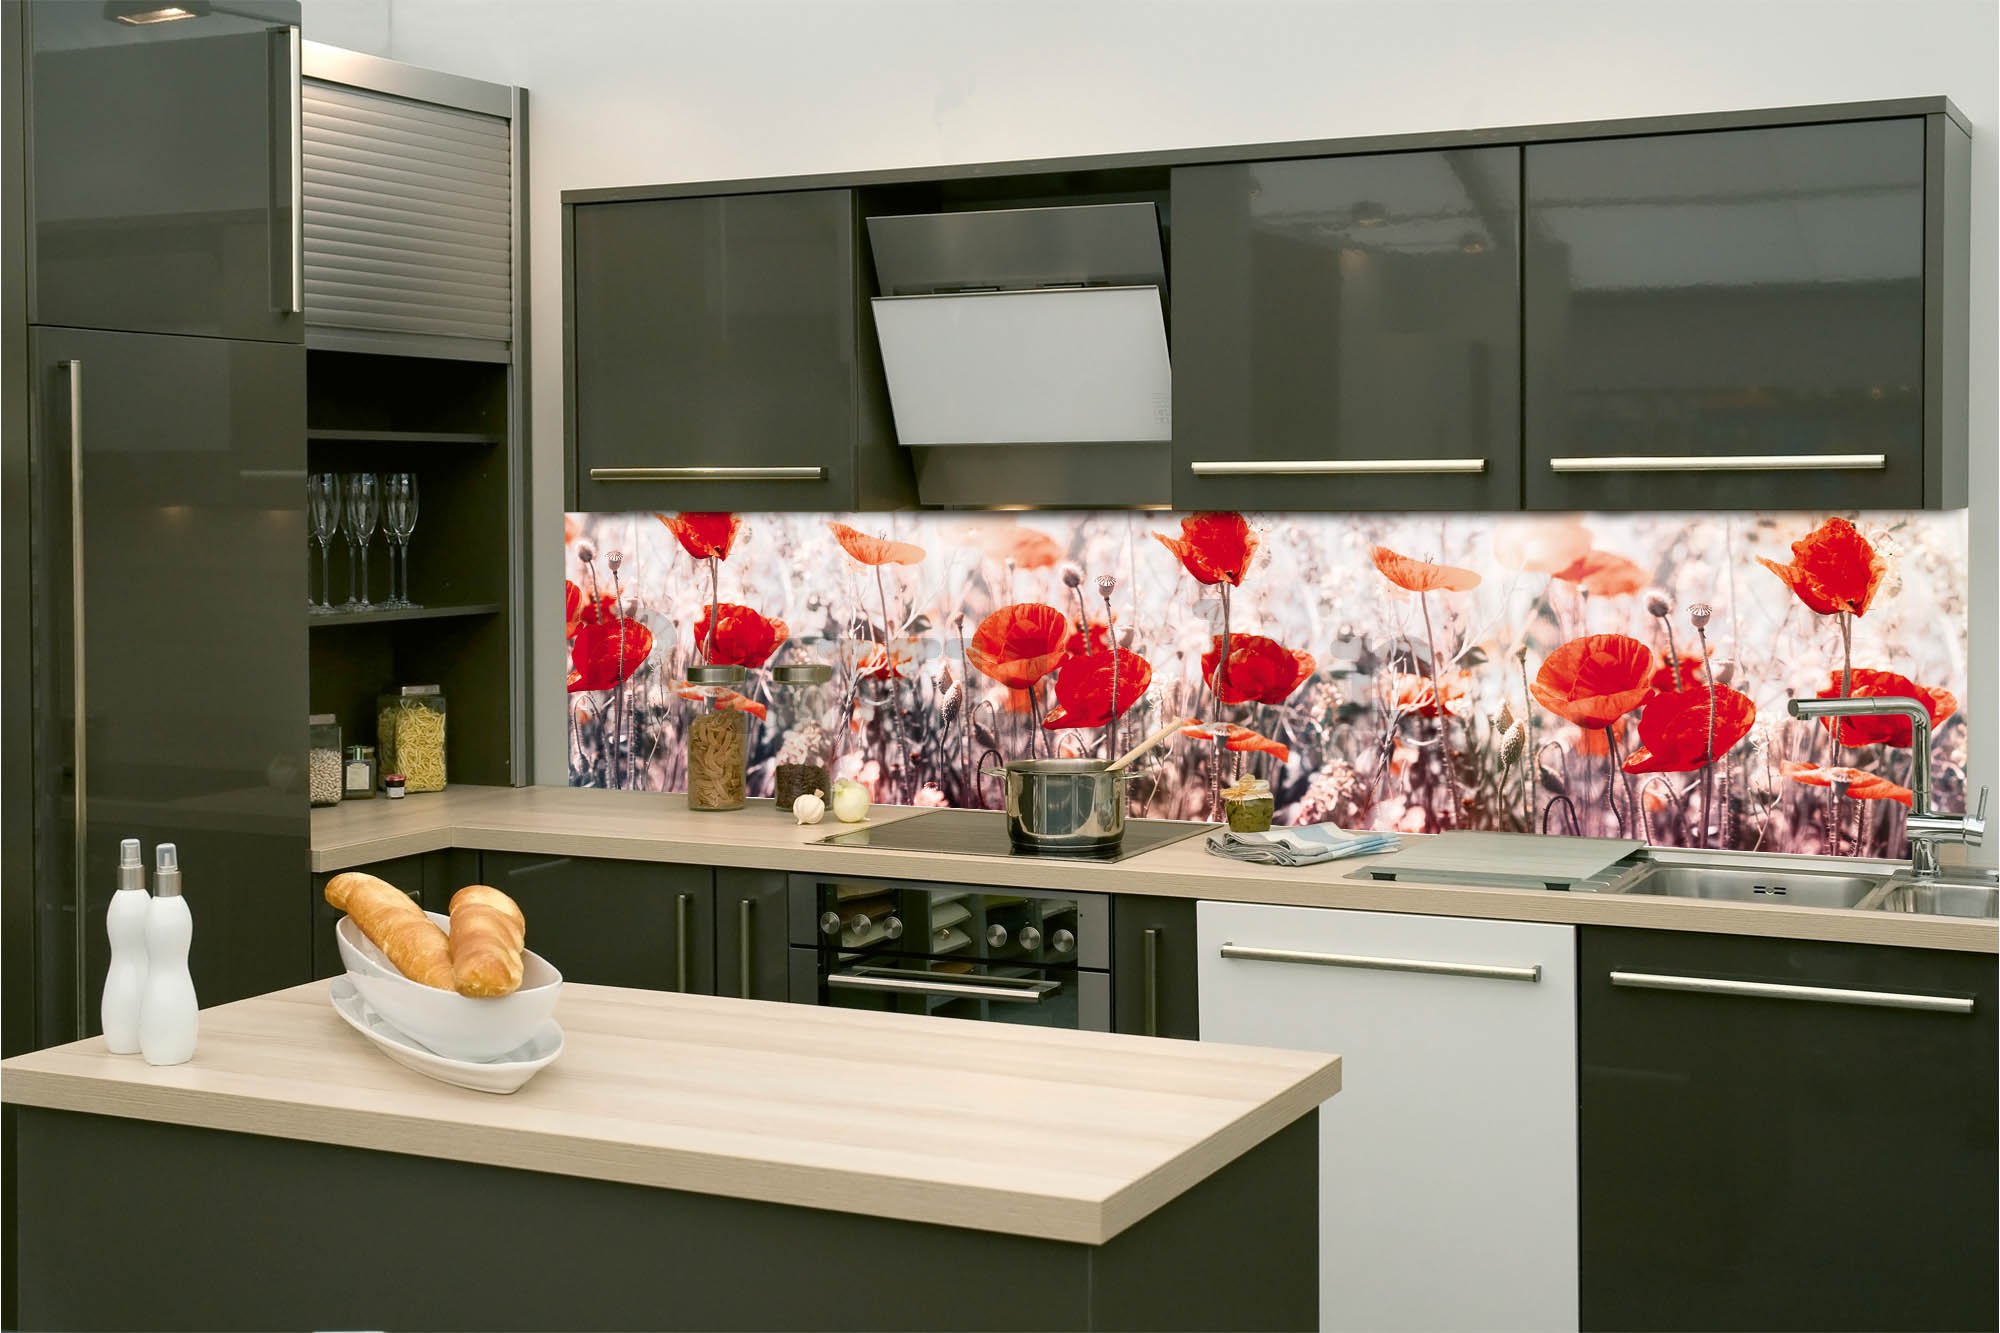 Samoljepljiva periva tapeta za kuhinju - Cvjetovi maka, 260x60 cm